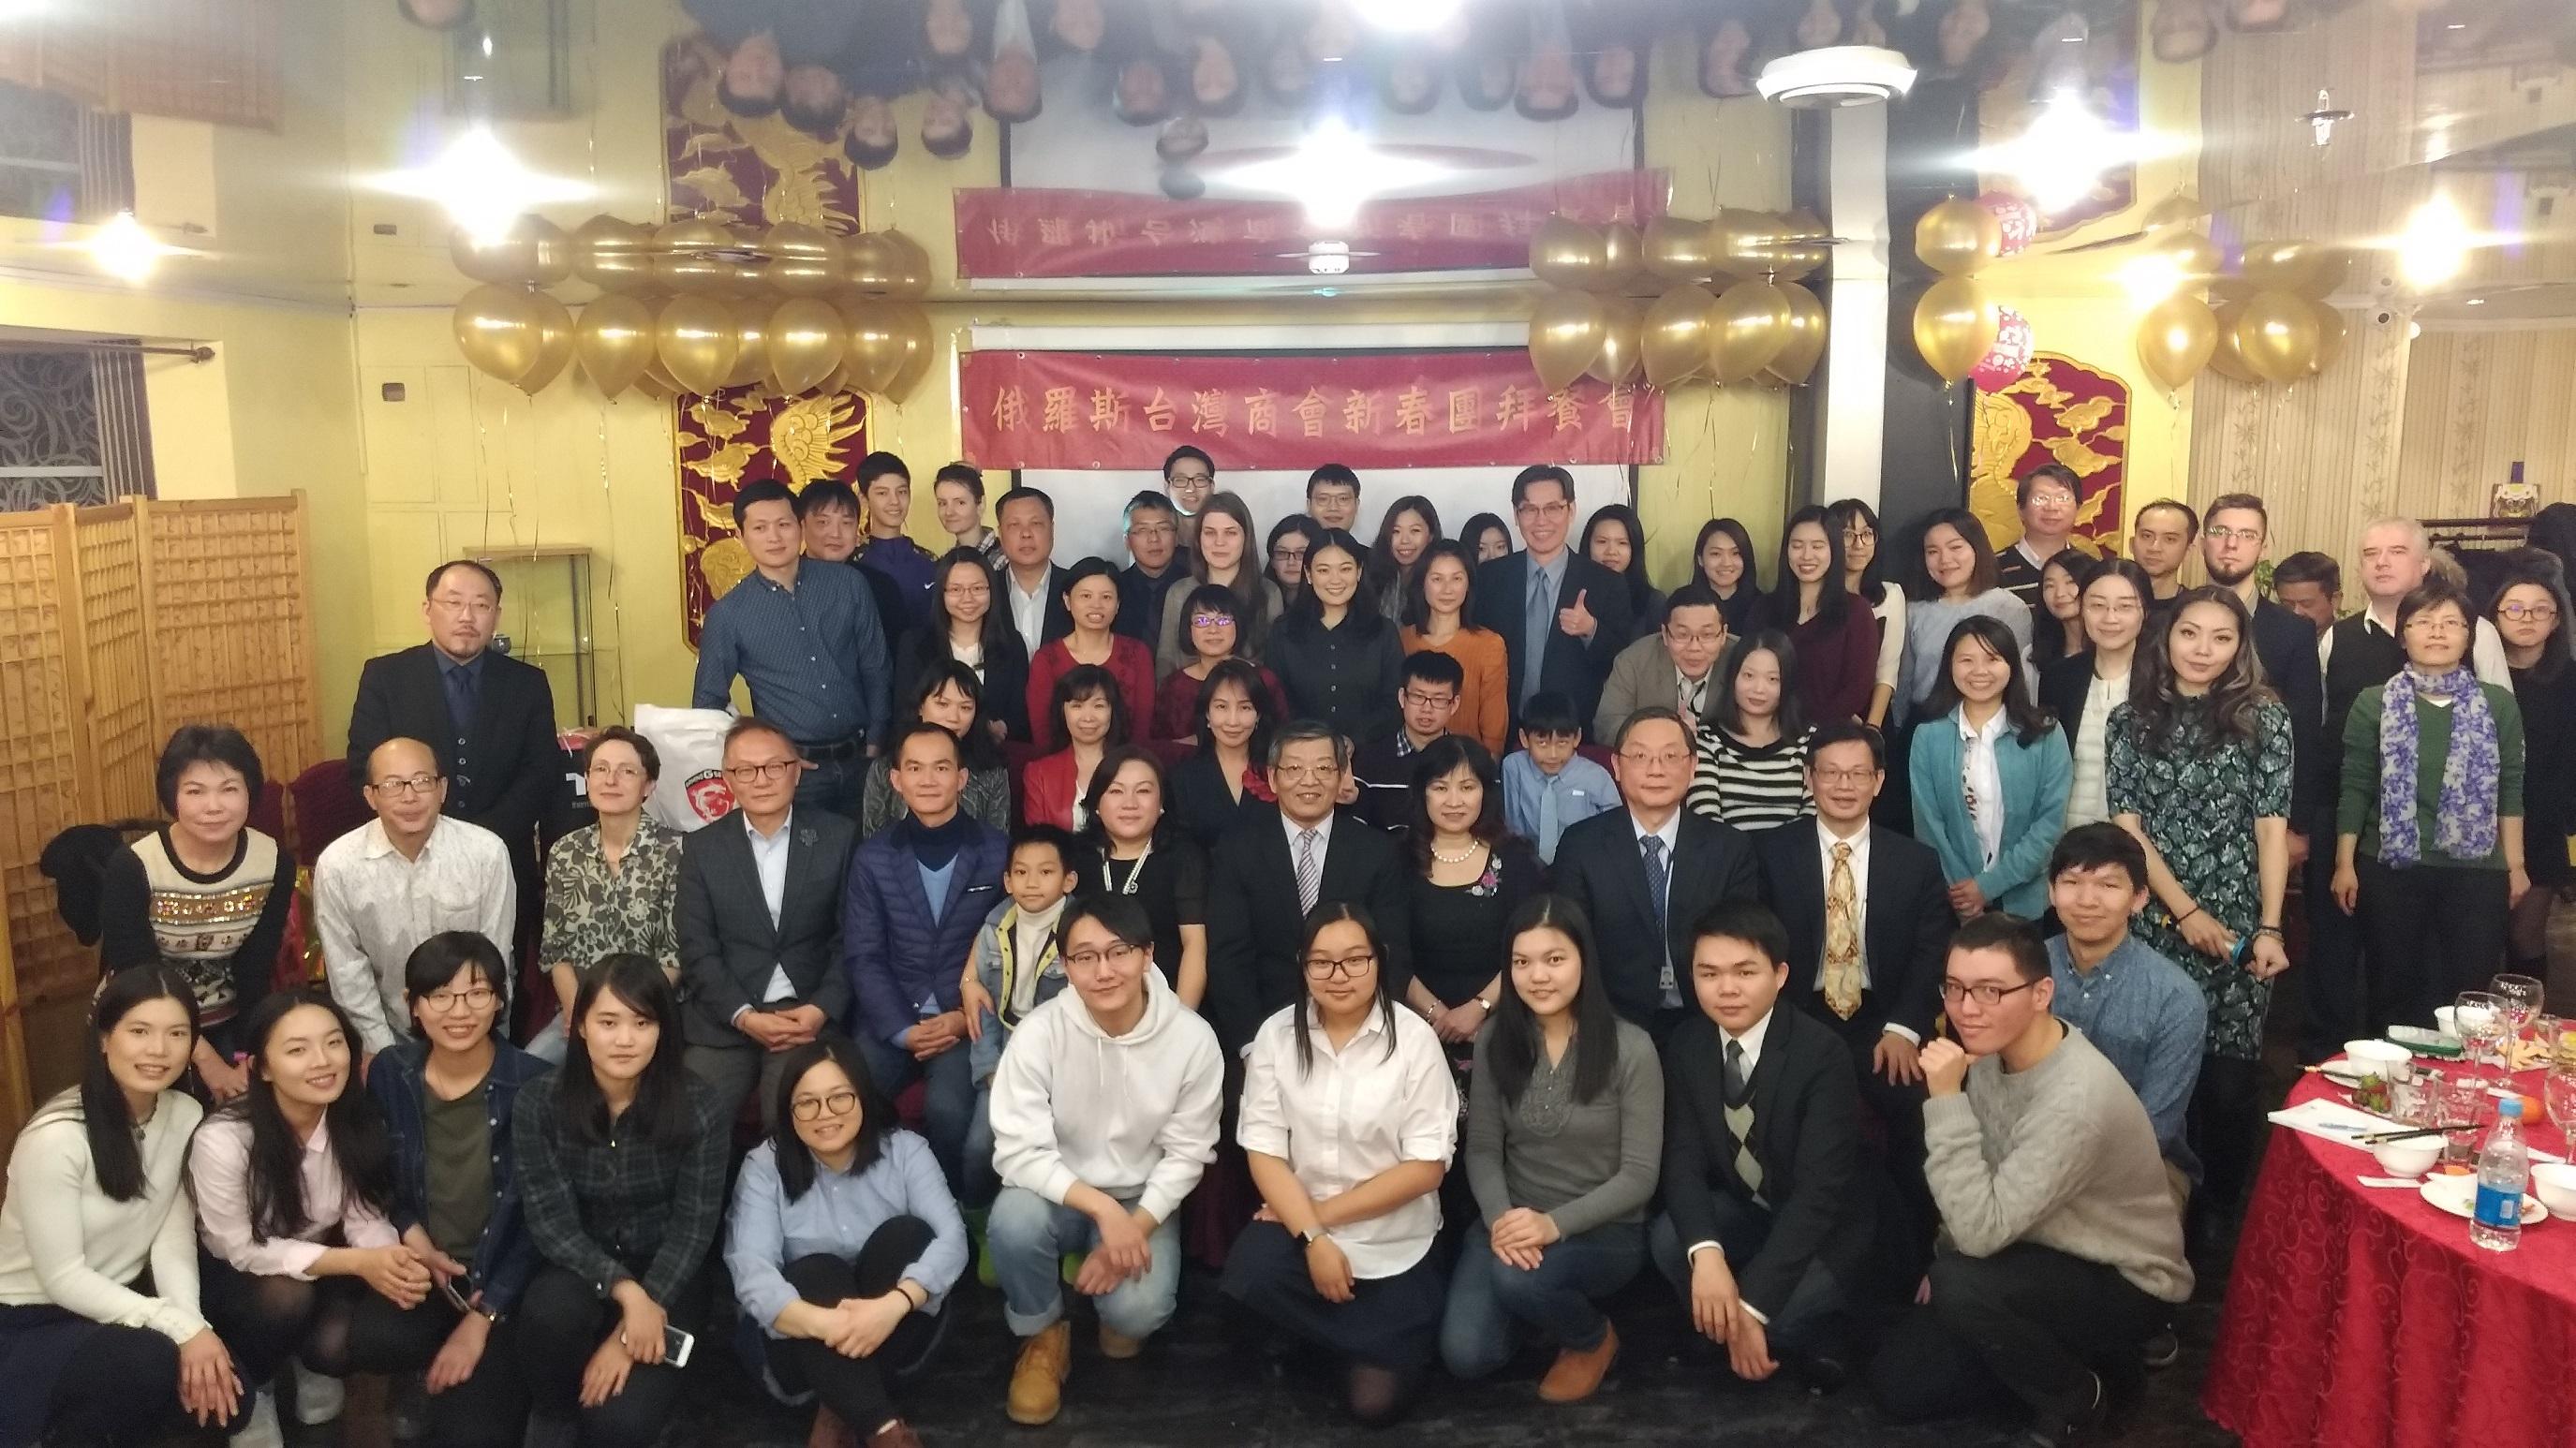 
俄羅斯台灣商會與駐俄羅斯代表處於107年2月22日(週四)晚間合辦「2018全僑新春聯誼餐會」，計有70餘位僑胞、台商、眷屬、留學生參加，場面熱烈。
